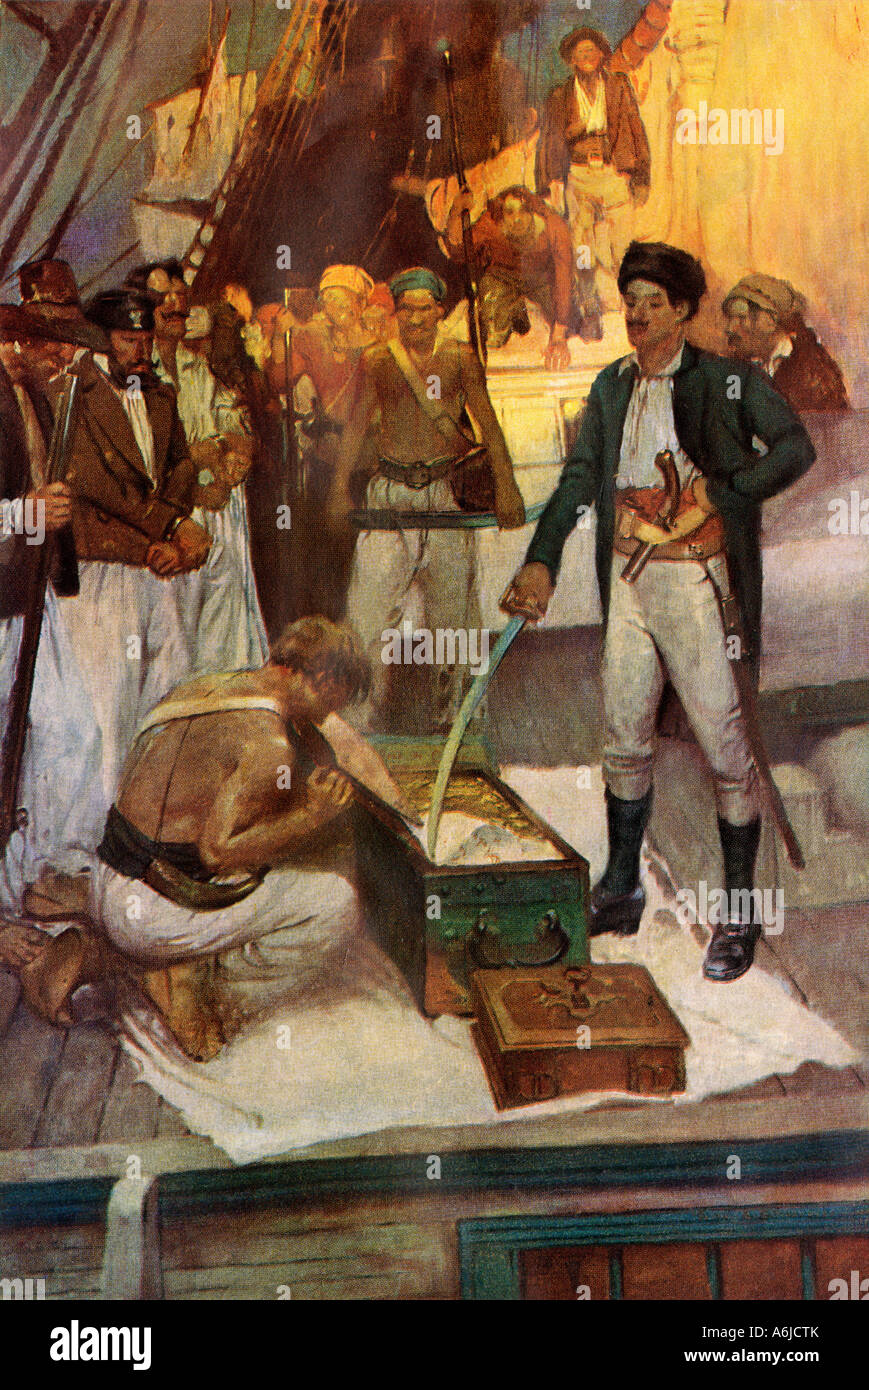 Pirat Jean Lafitte akzeptiert eine Brust von Lösegeld. Farbe halftone eines Frank Schoonover Abbildung Stockfoto